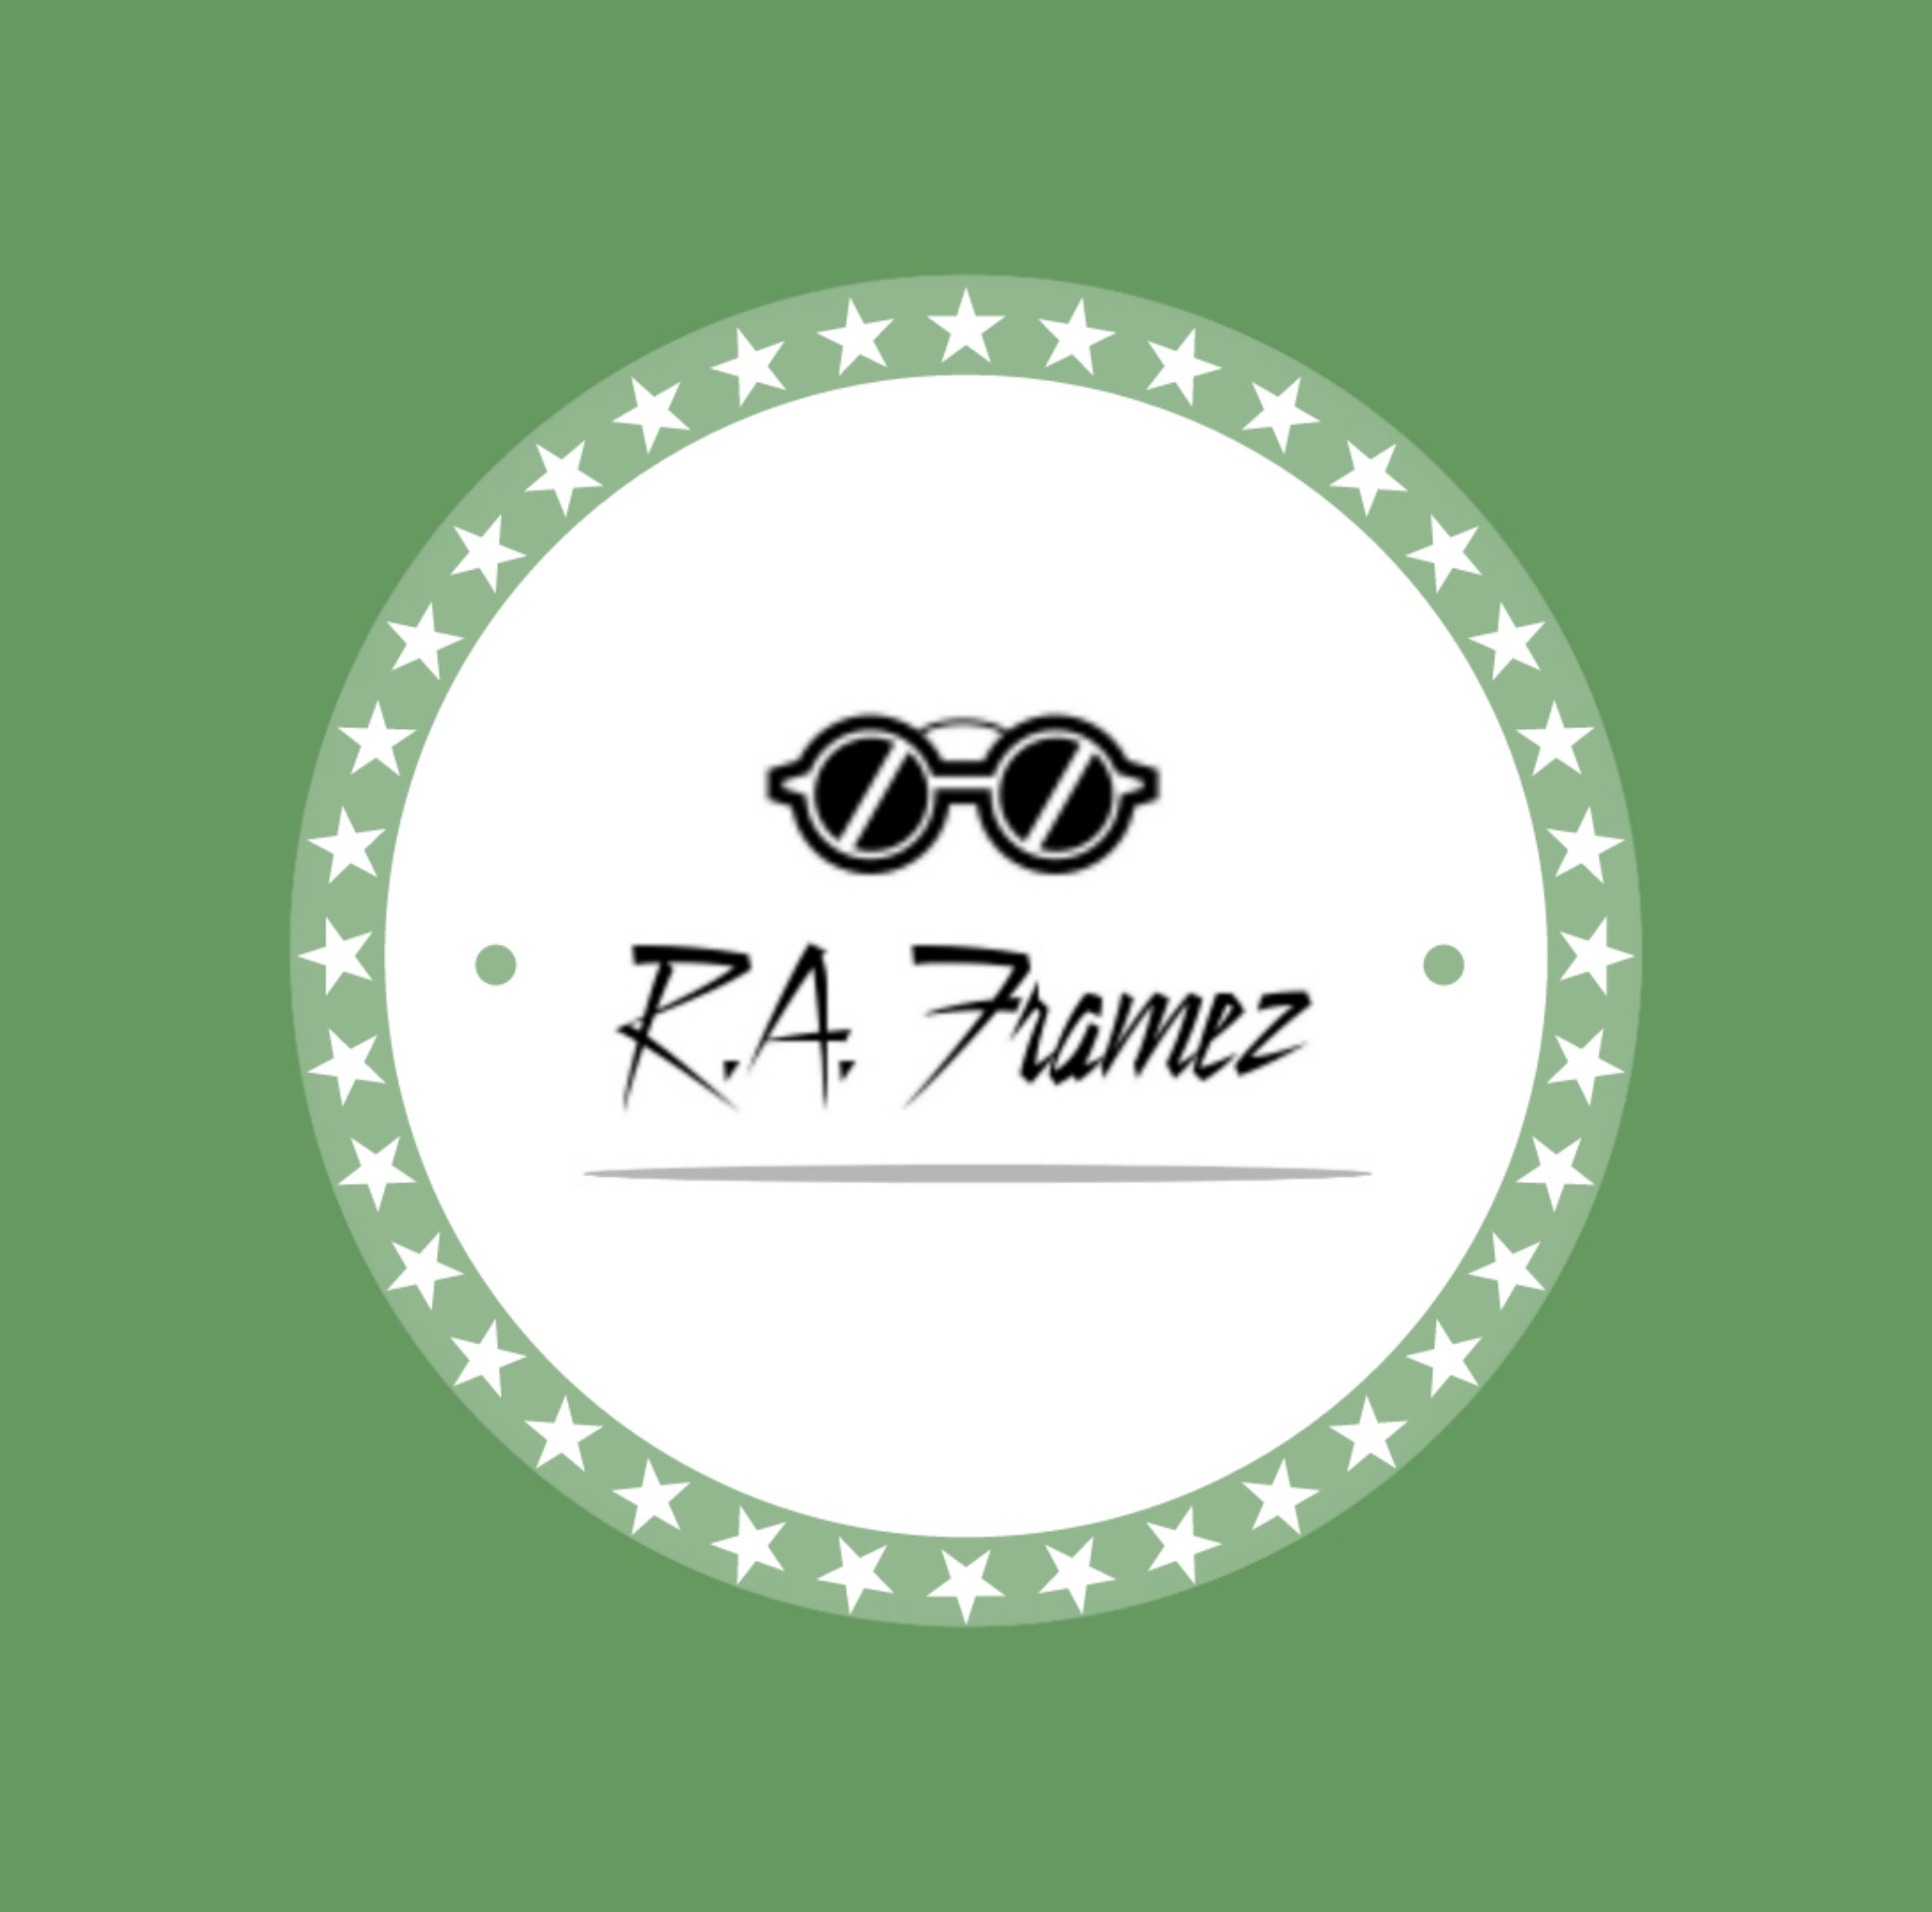 R.A. Framez Sunglassses